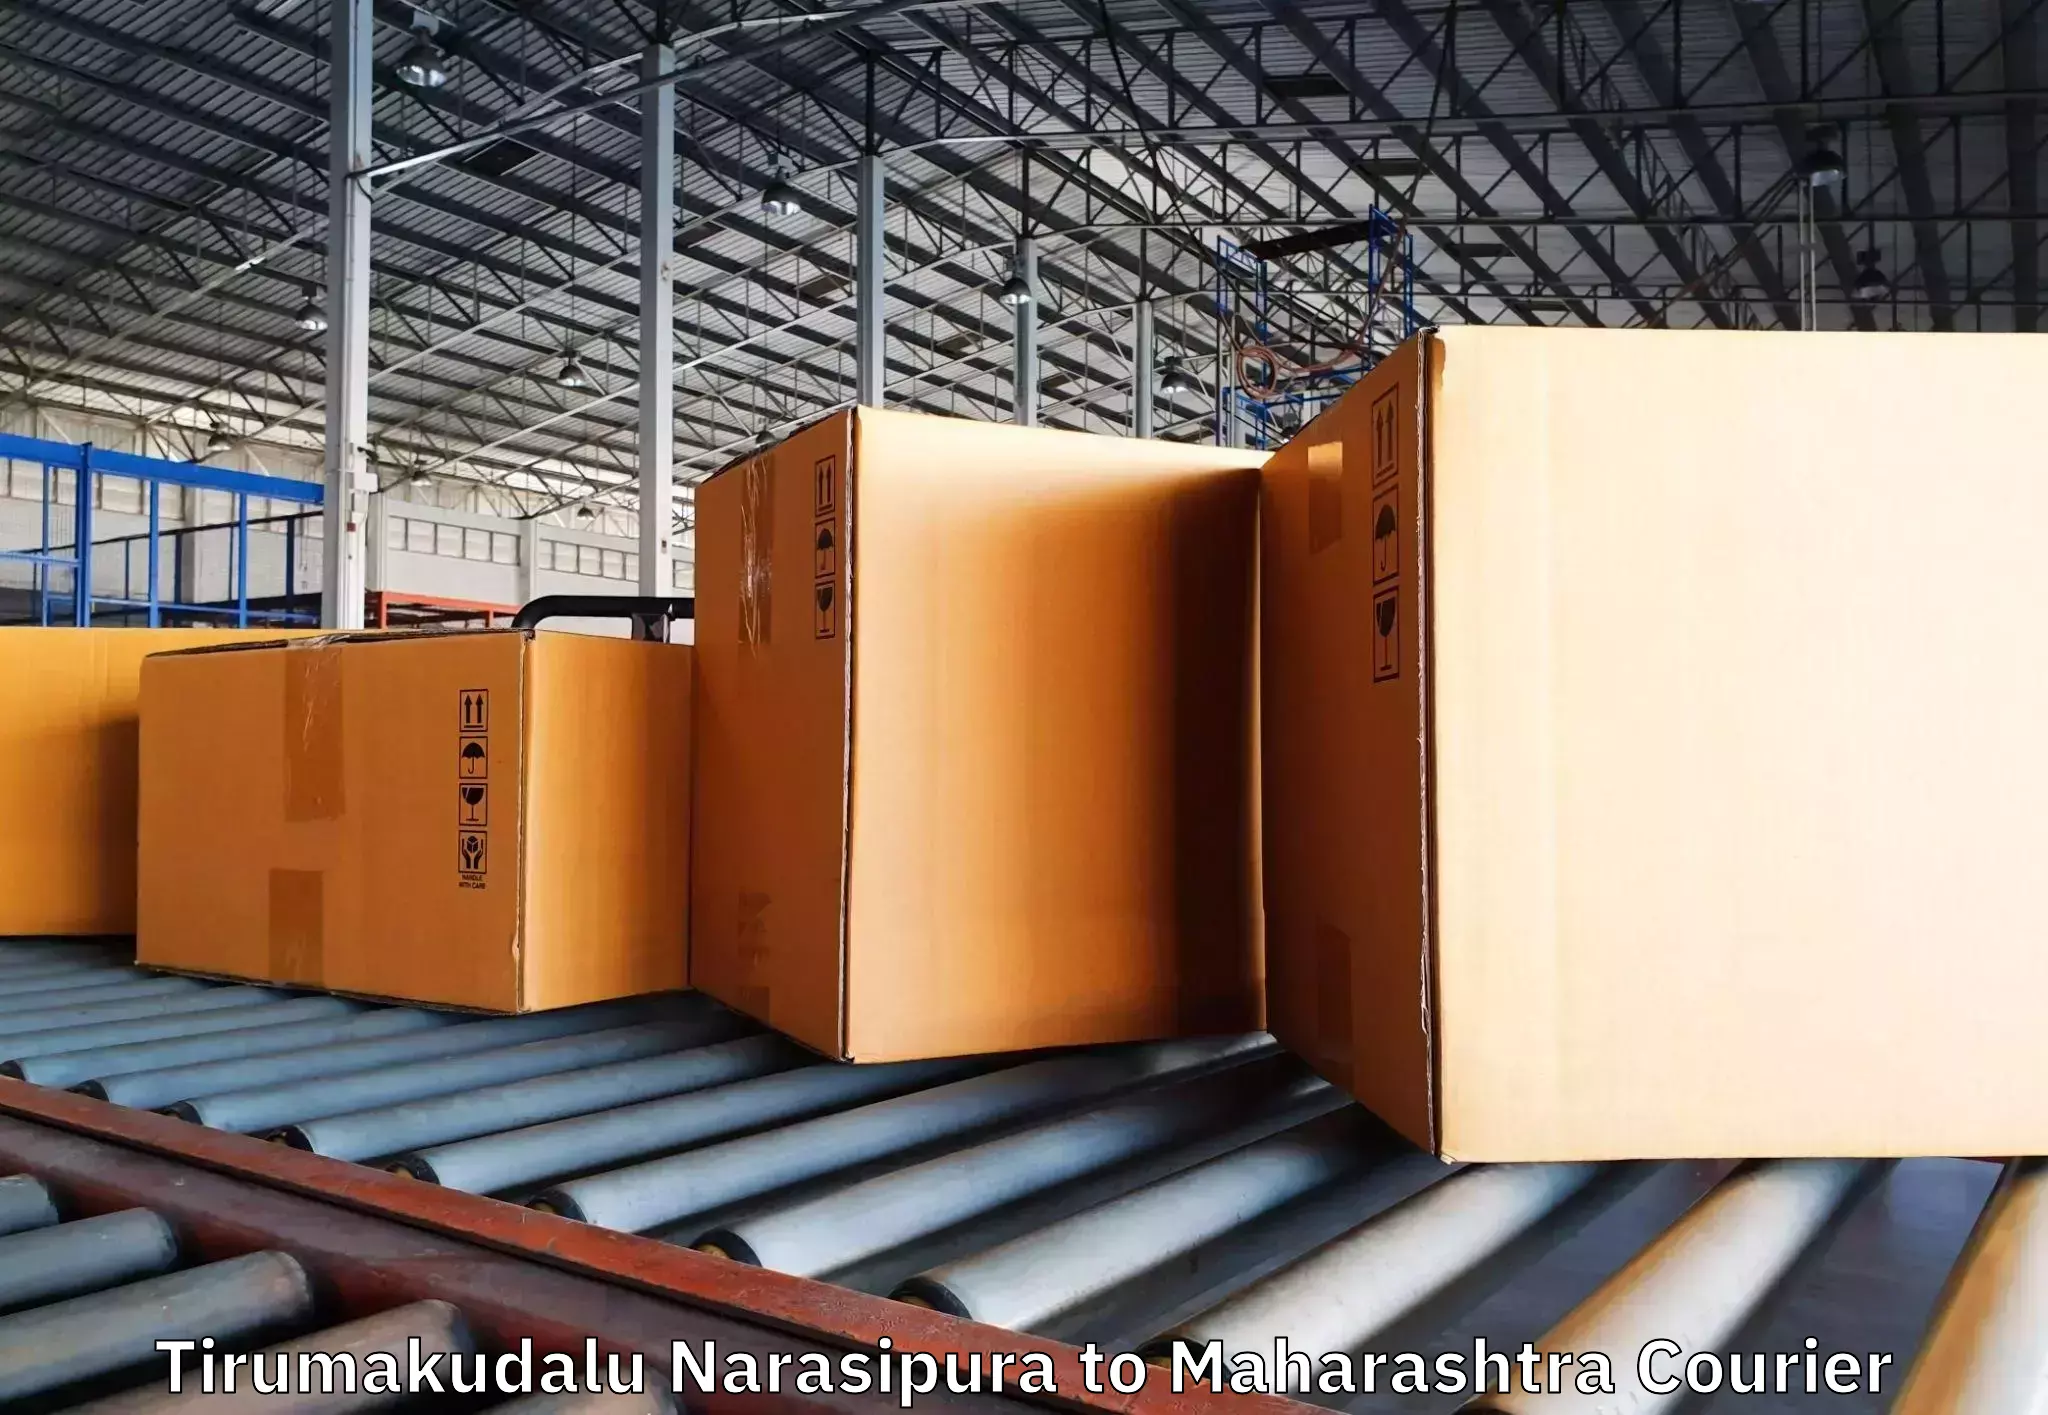 Reliable moving assistance Tirumakudalu Narasipura to Shirpur